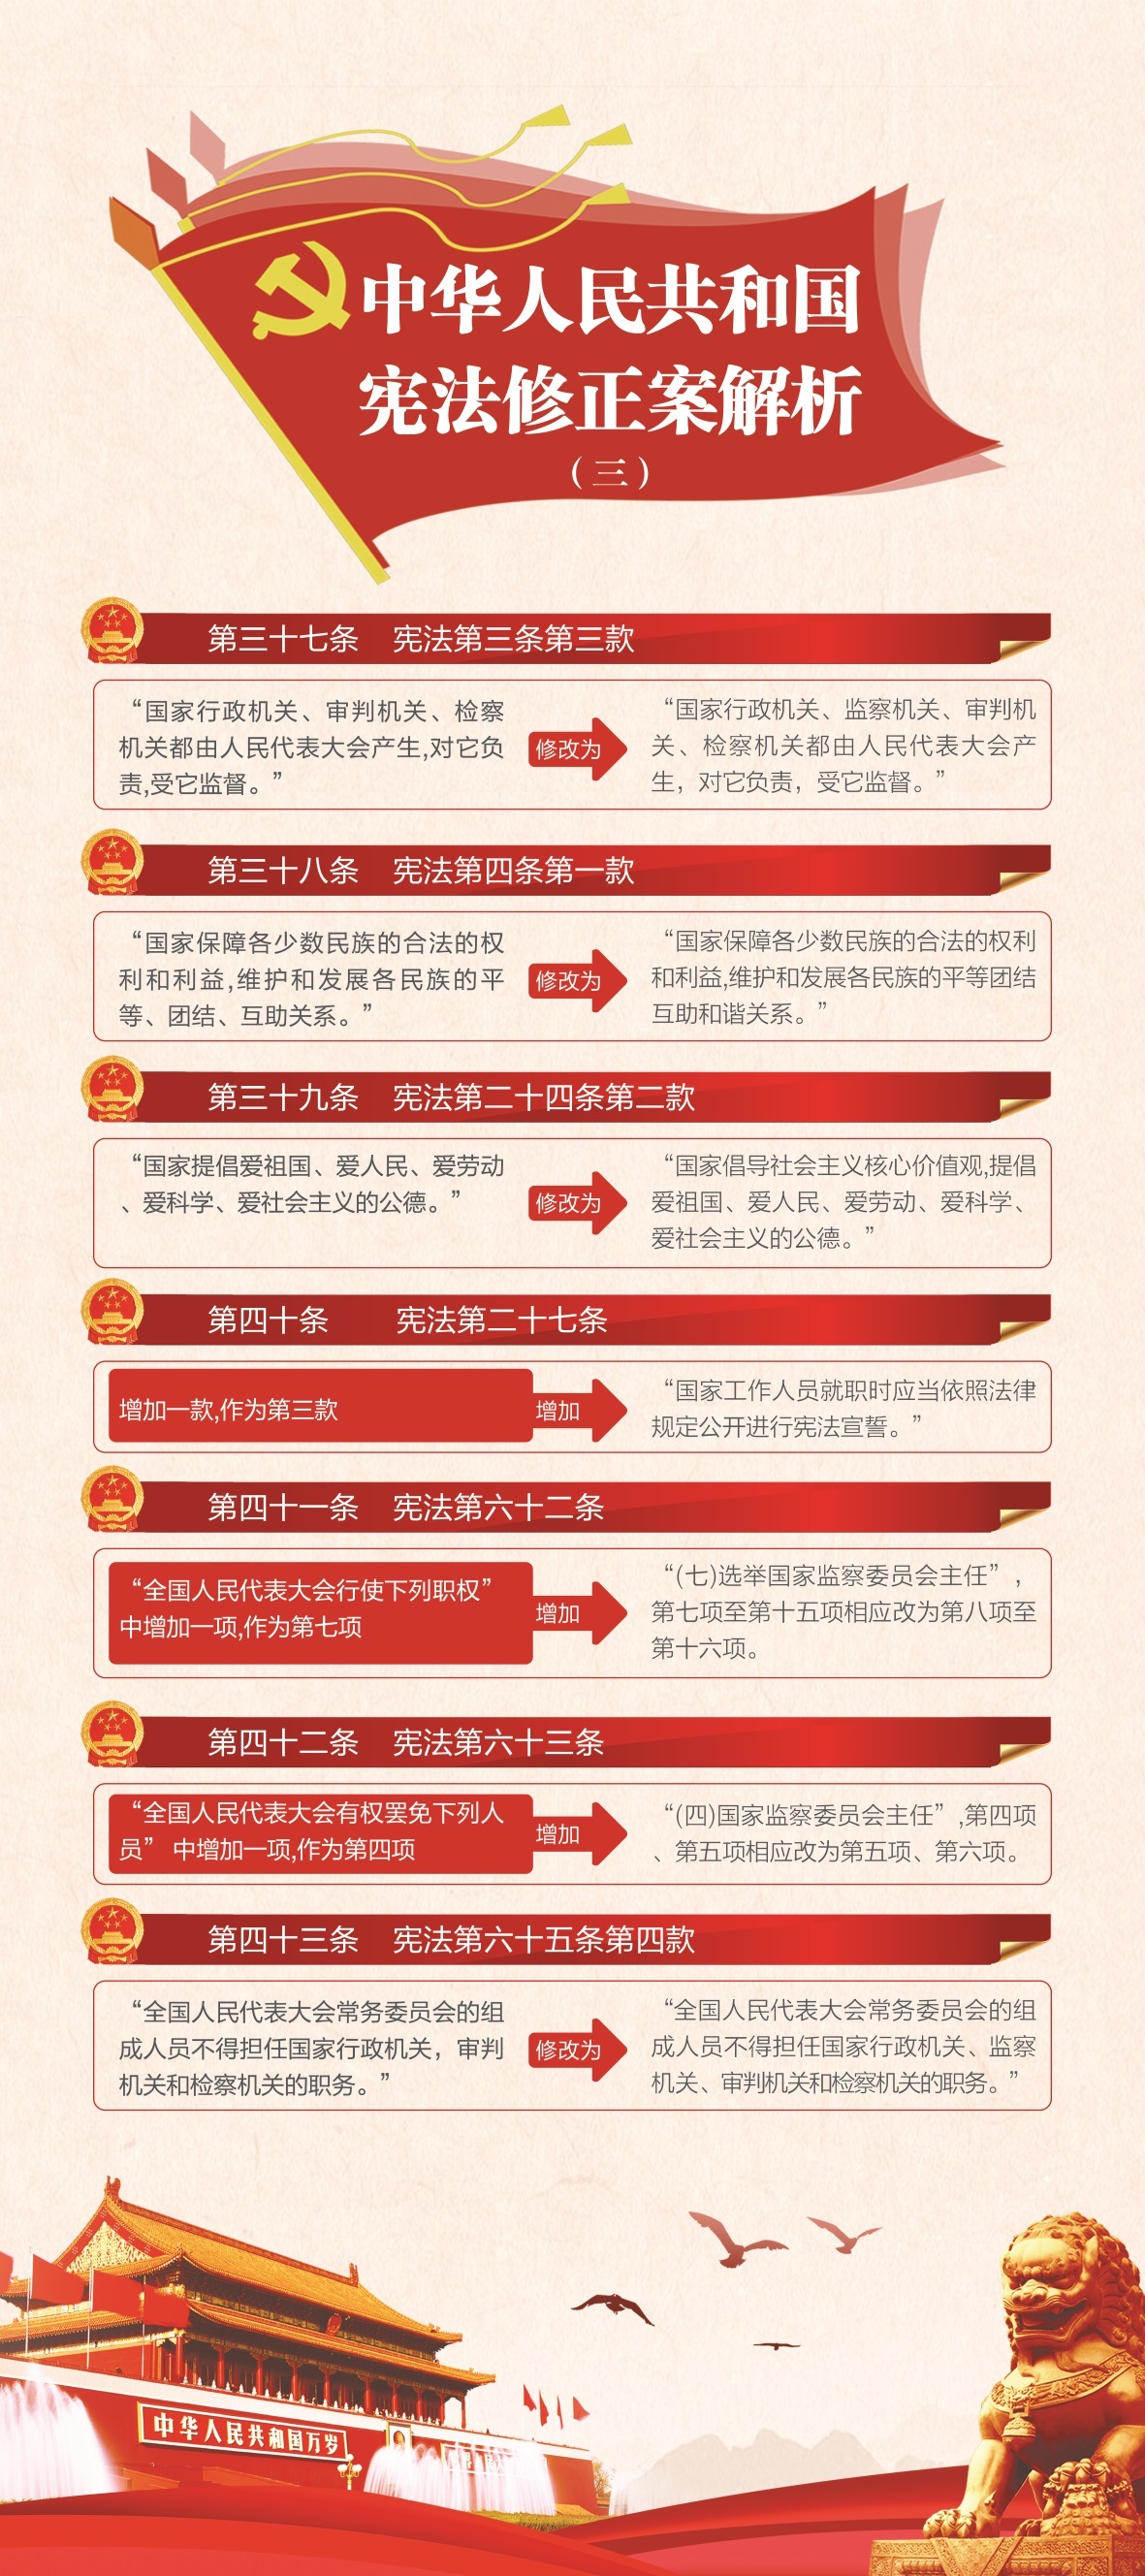 中国电信系列展架设计图2